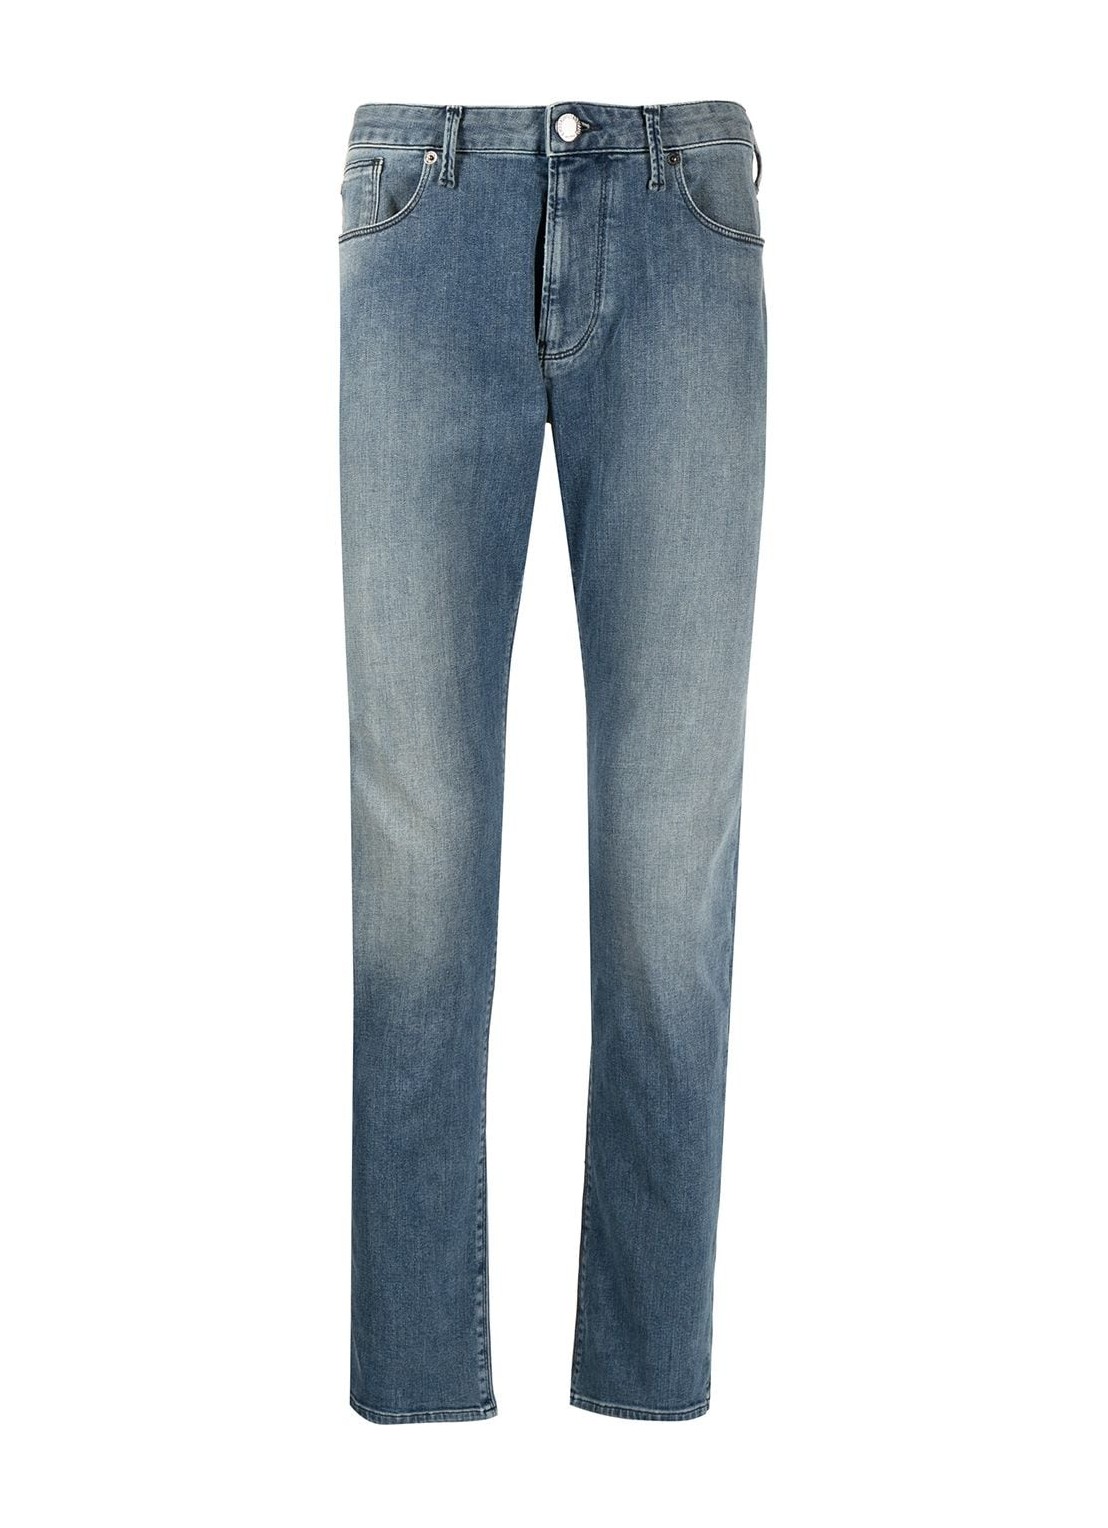 Pantalon jeans emporio armani j06 - 8n1j061g19z 0943 talla 38
 